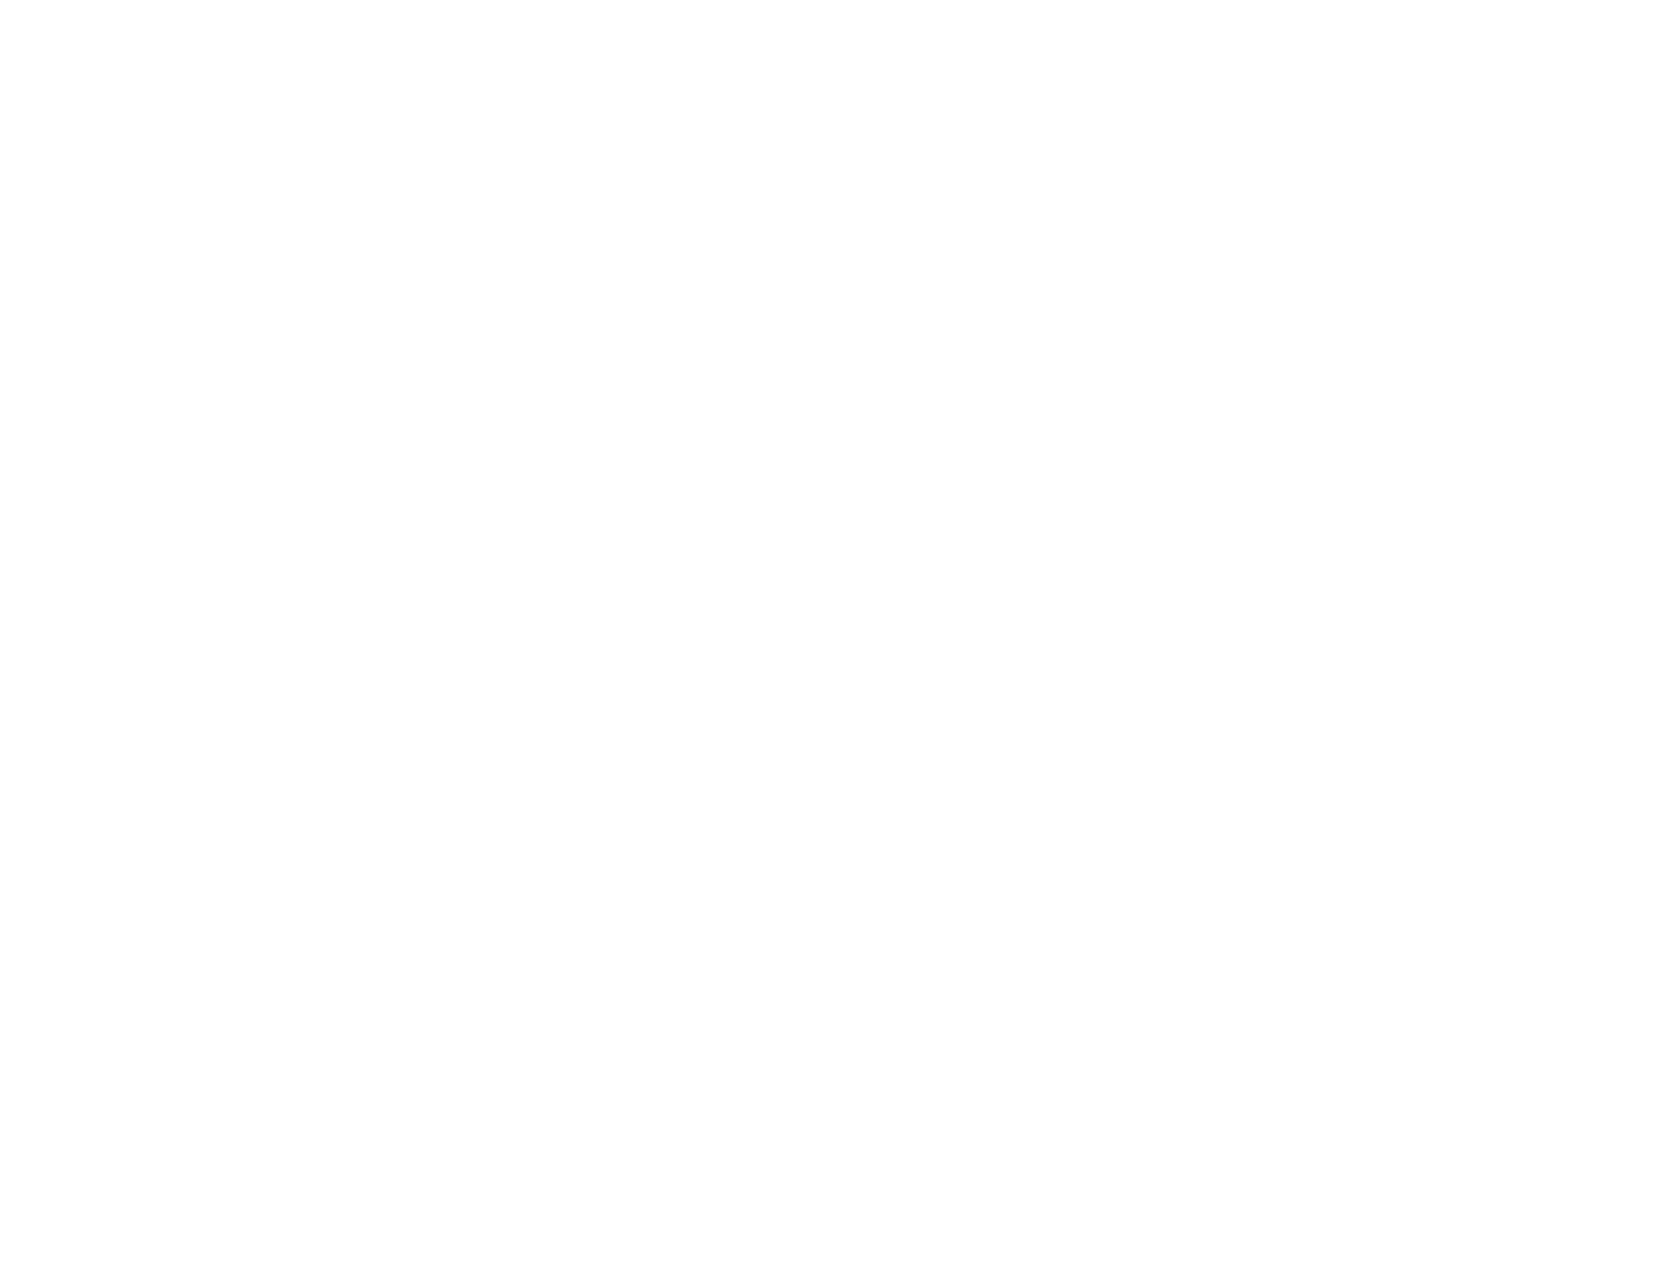 Православная Икона Божьей Матери "Неупиваемая чаша" Богородица Ручная работа. Резьба по дереву Интерьер Дизайн комнаты